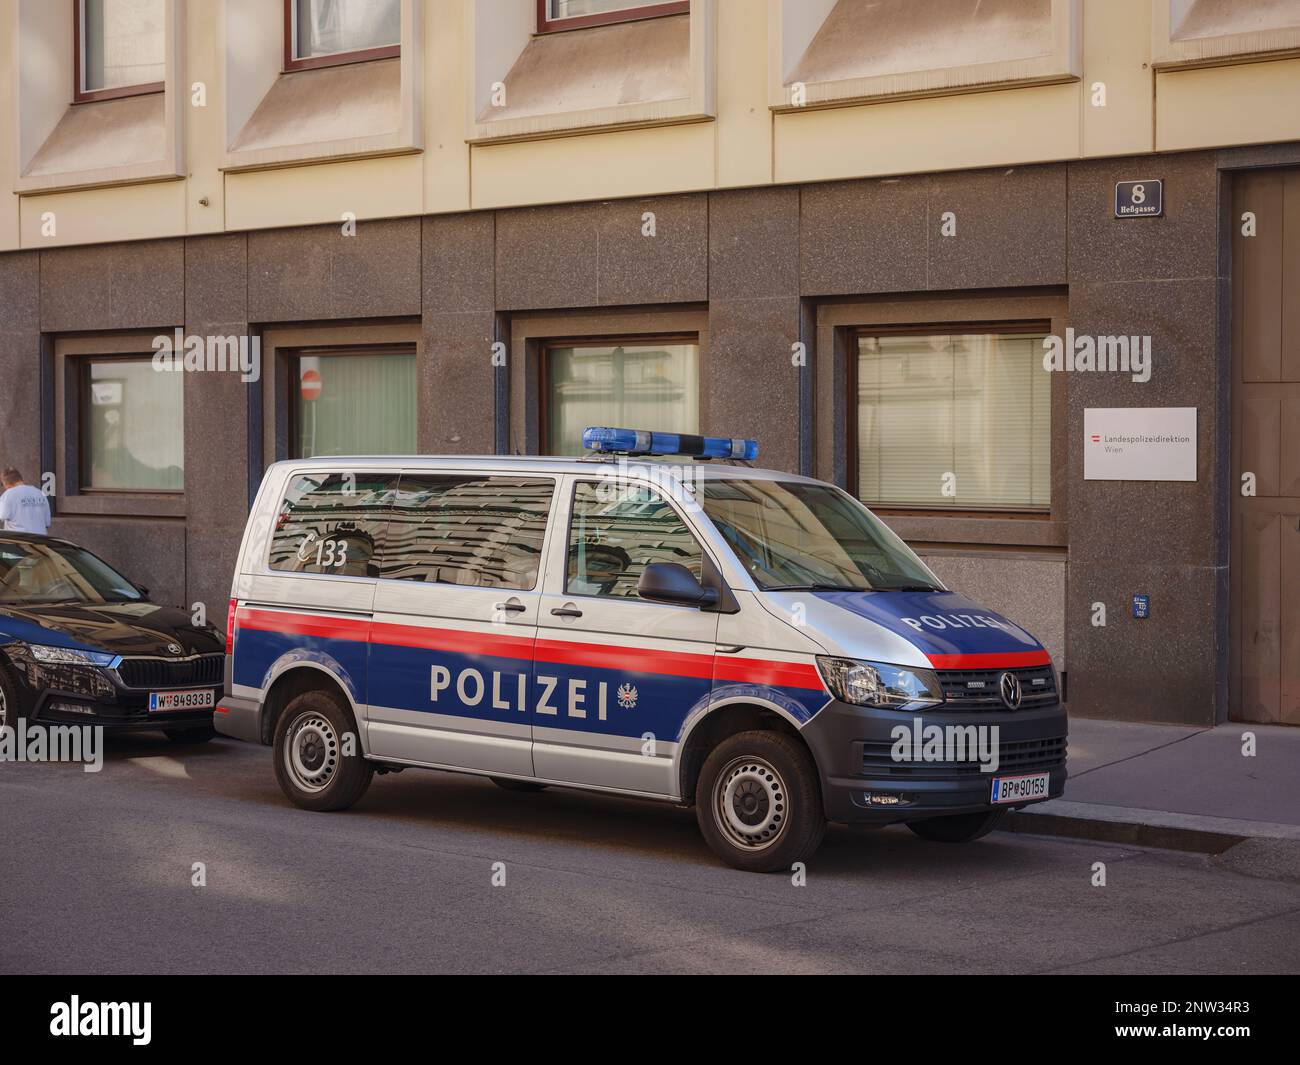 Wien, Osterreich - 11. August 2022: Österreichische Polizeiautos. Polizei Osterreich Terroranschlag Editorial Illustrative image. ISIS, ISIL Terrorbedrohung. Stockfoto